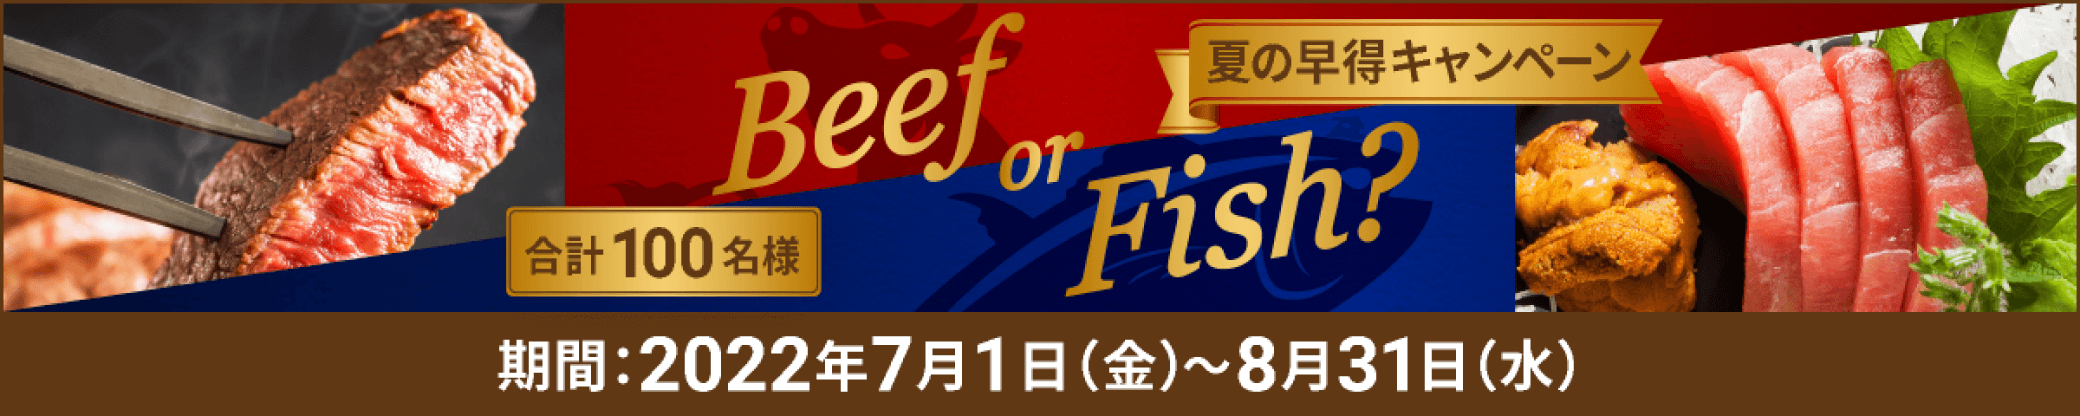 夏の早特キャンペーン Beef or Fish?